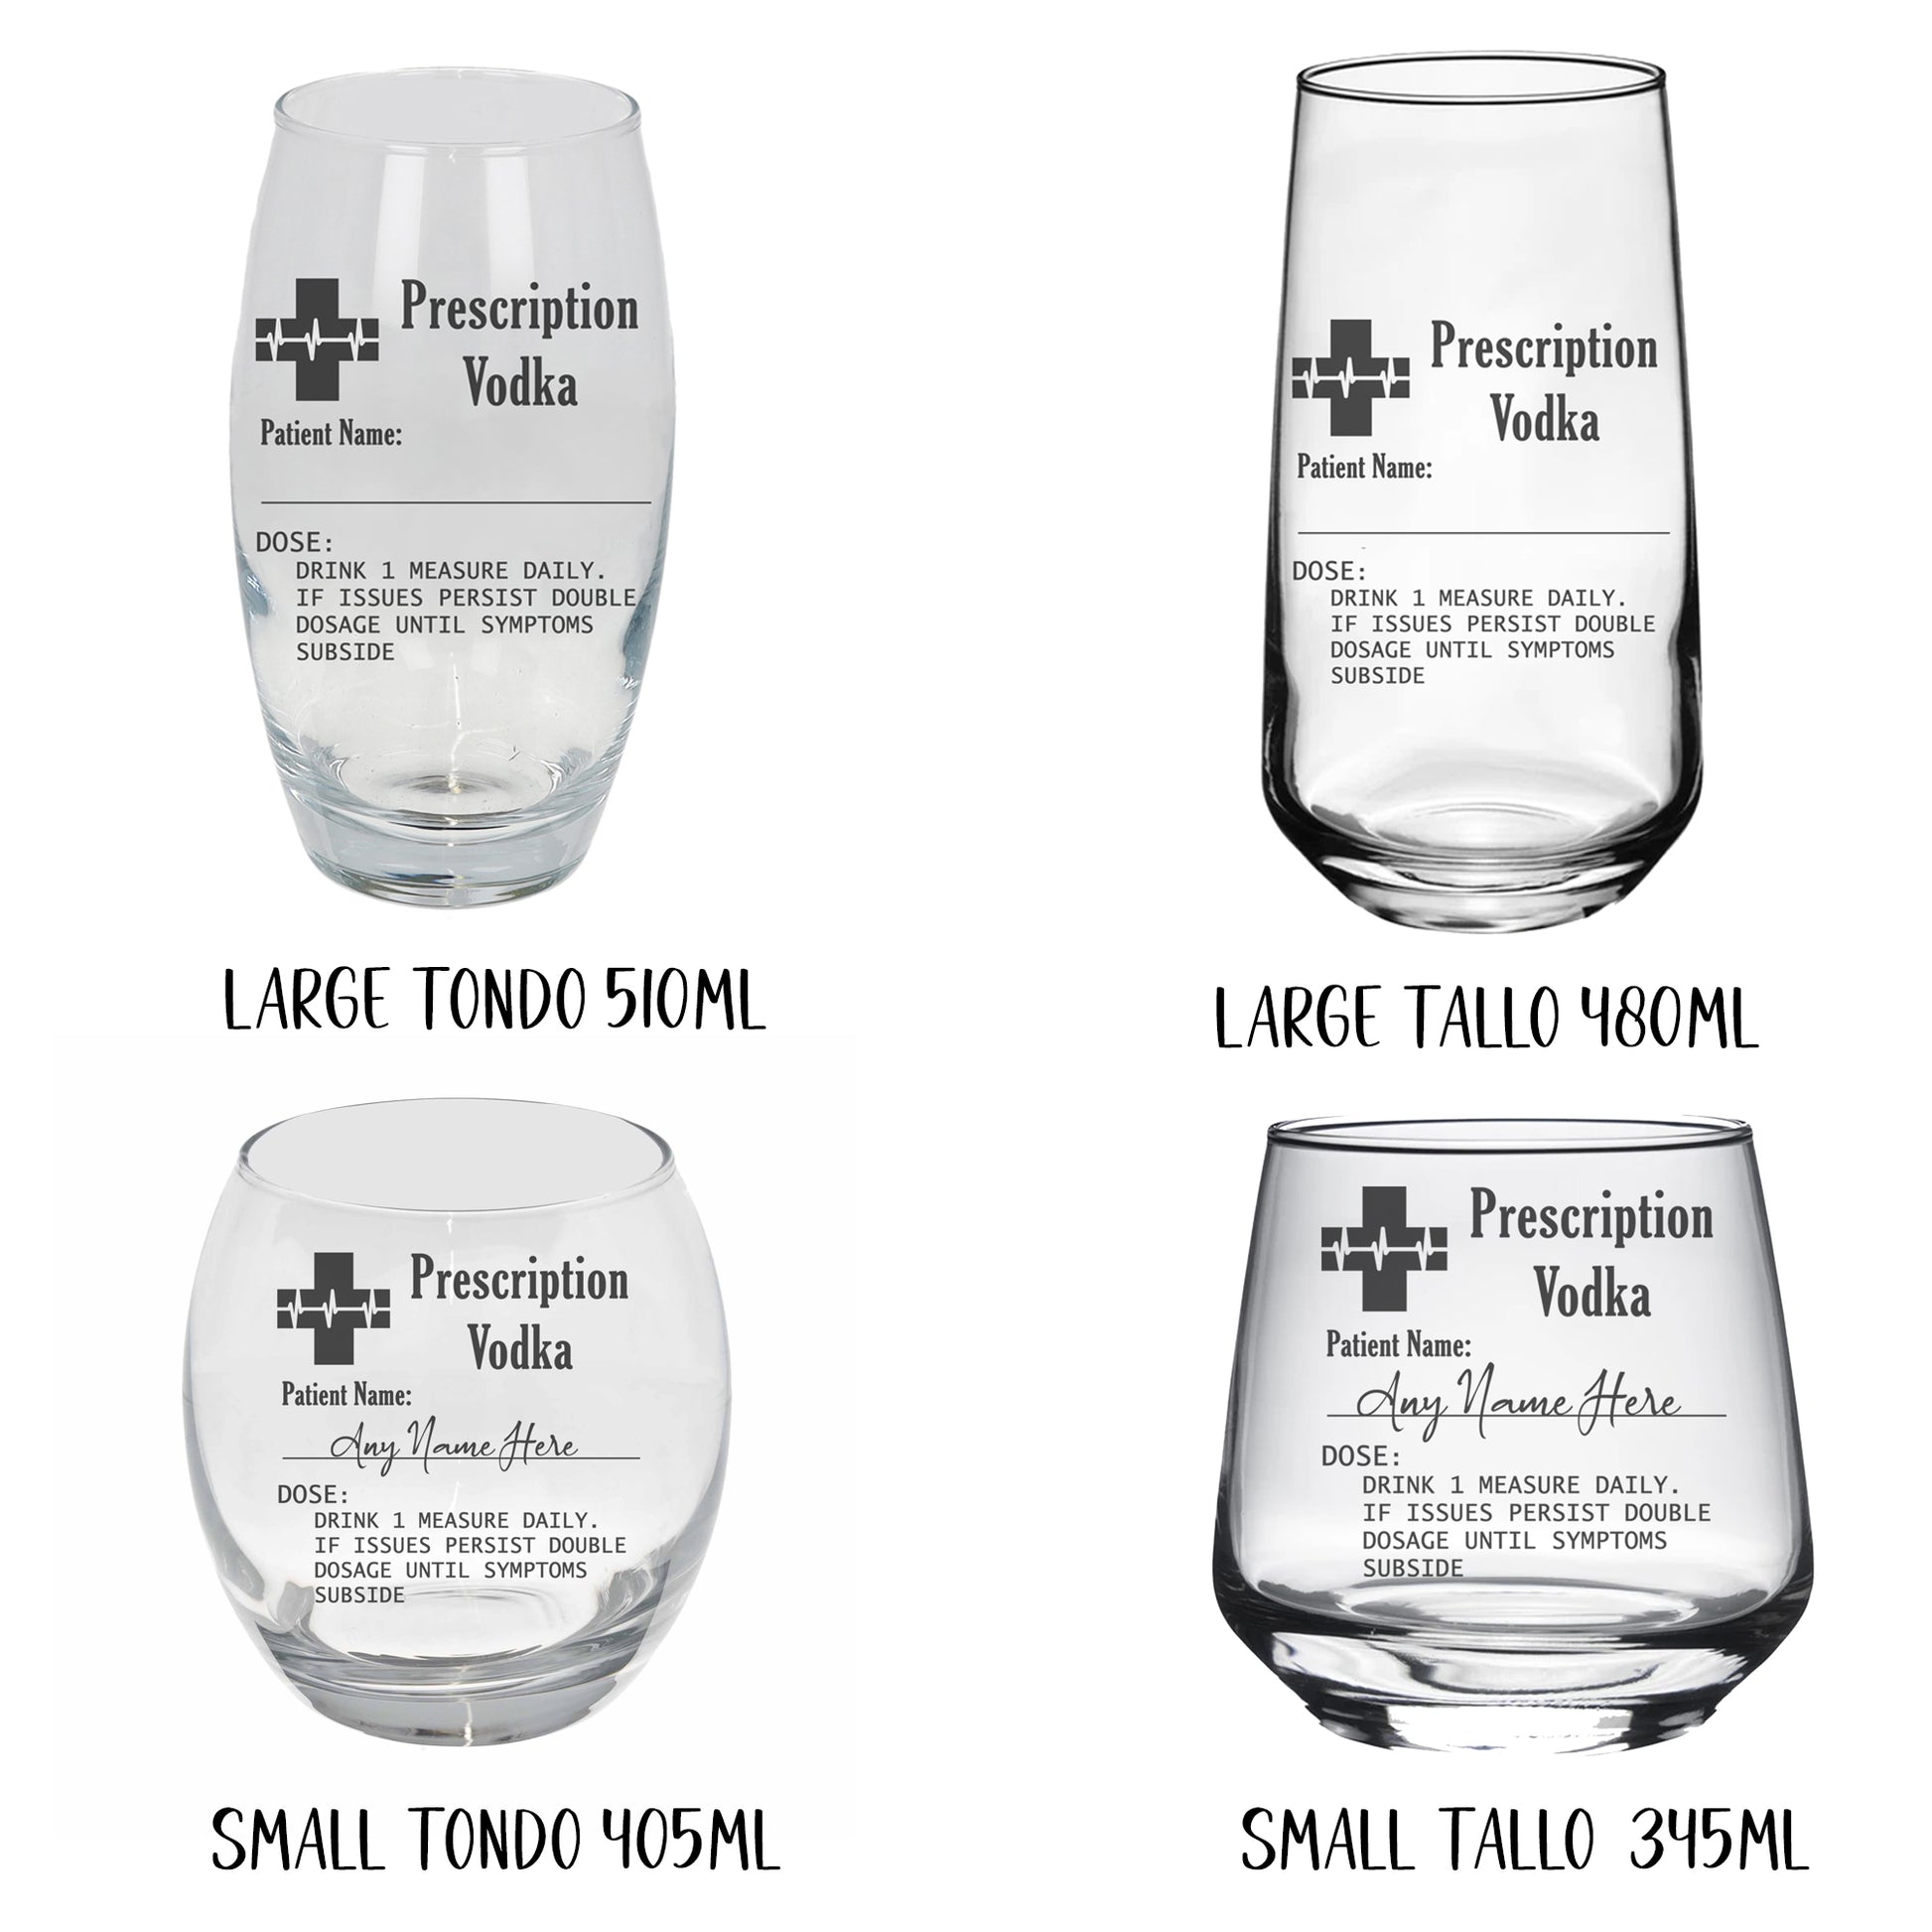 Personalised Prescription Rum Engraved Glass  - Always Looking Good -   